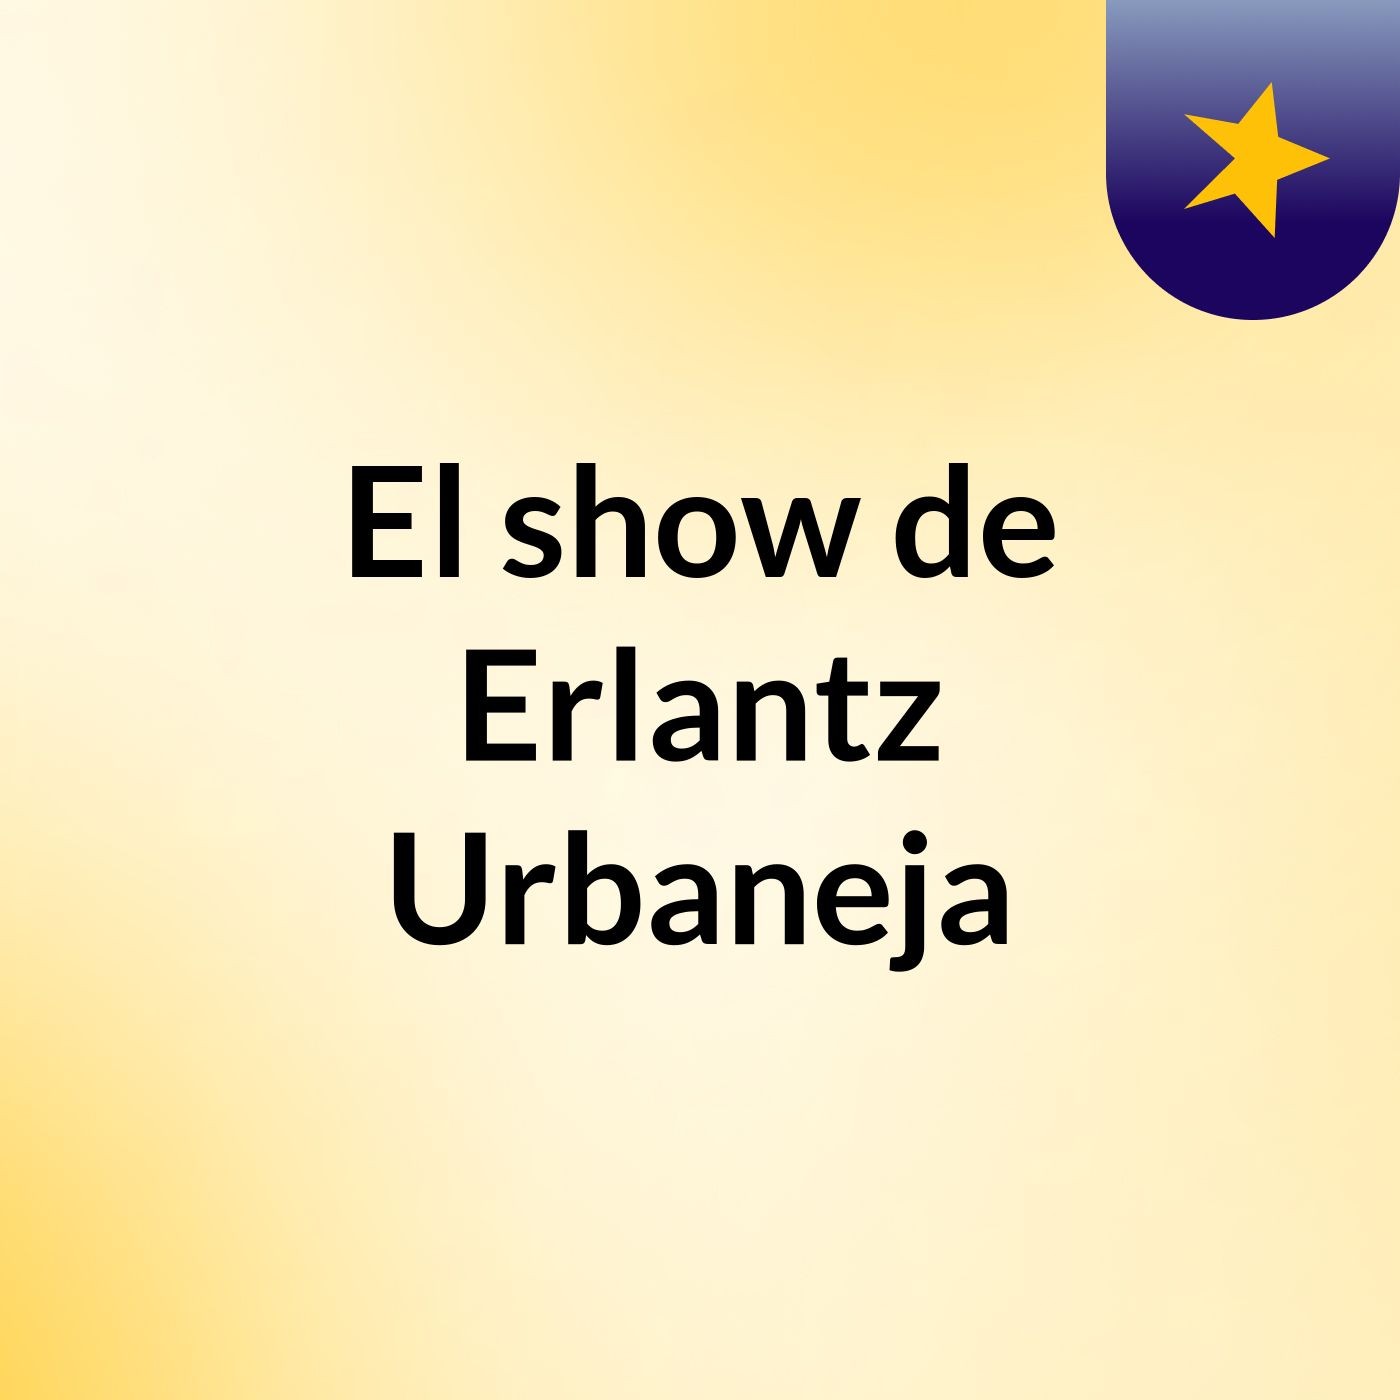 El show de Erlantz Urbaneja